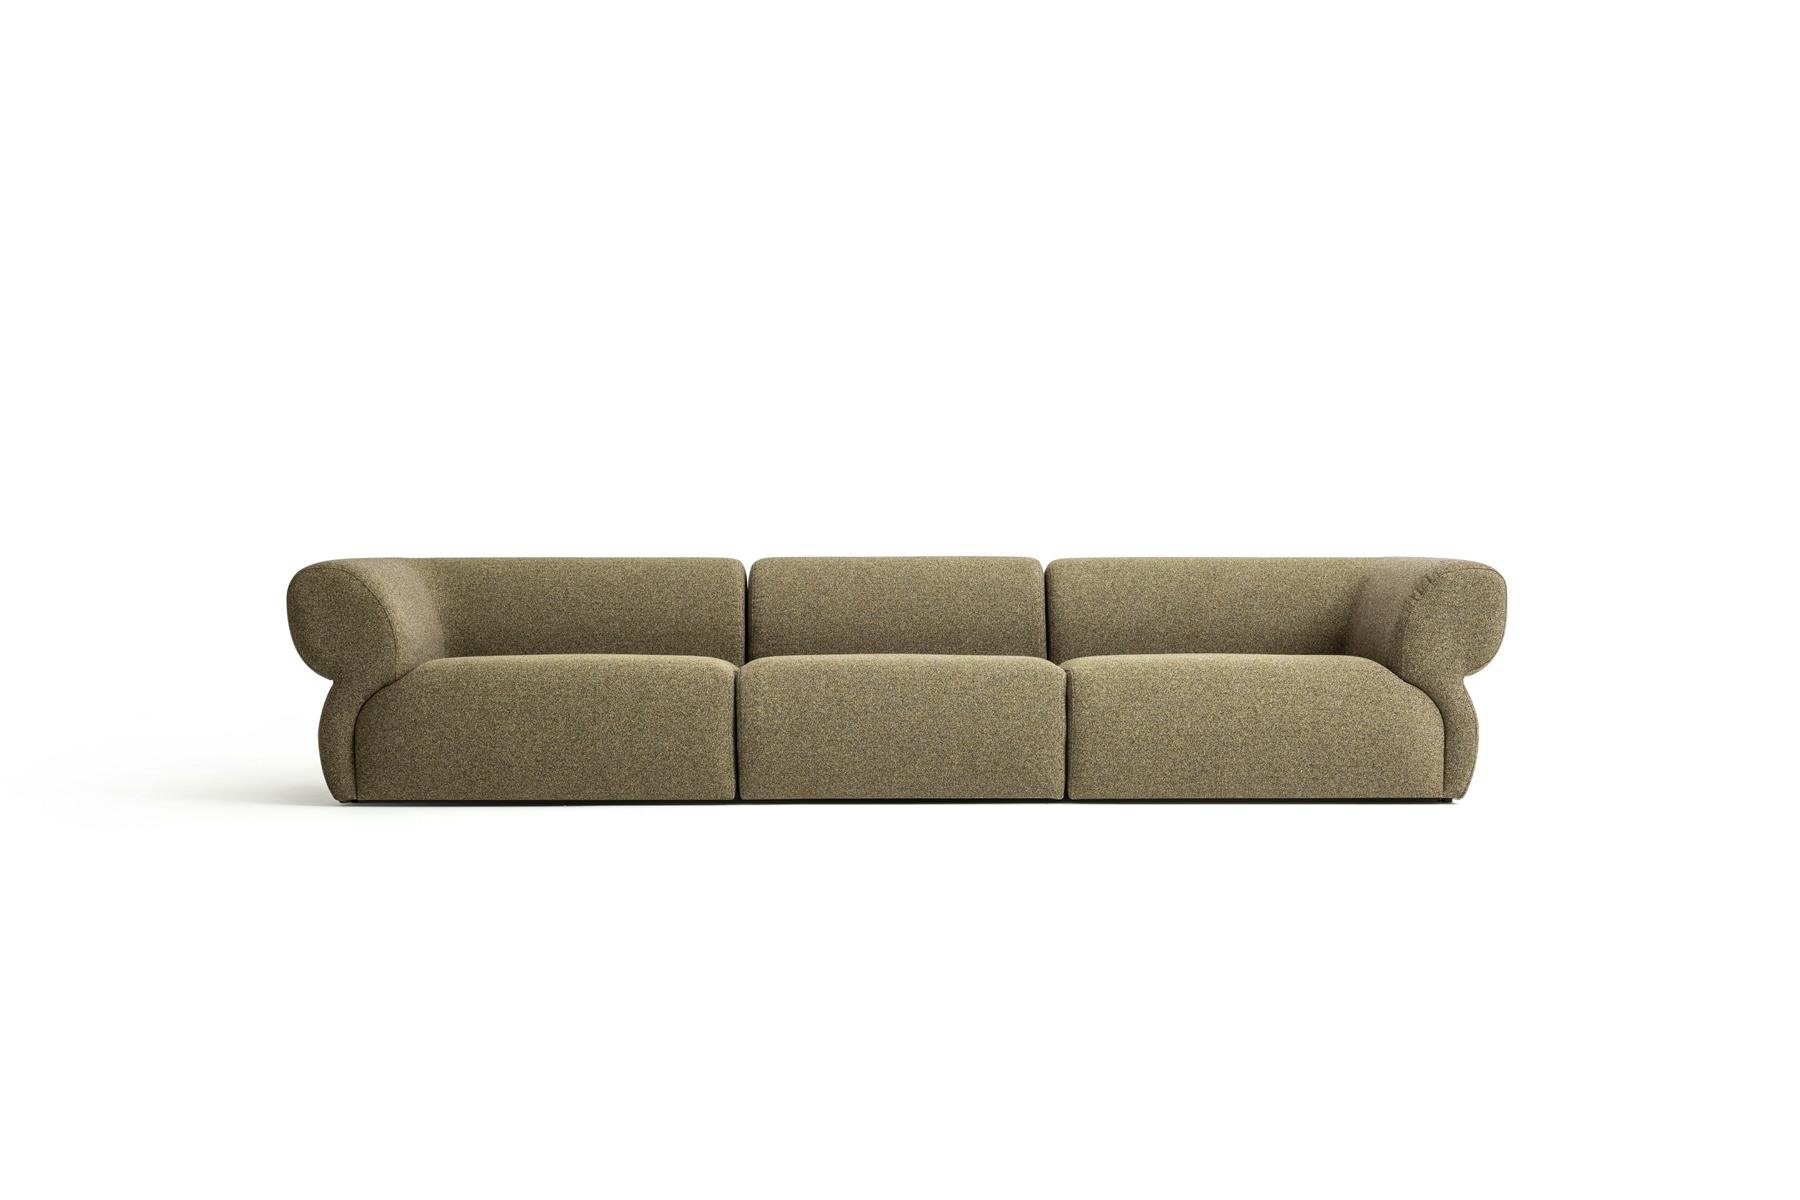 JVmoebel Big-Sofa Design Sofa 5 Sitzer Wohnzimmer Polstersofa Modern Stil, Made in Europe Braun